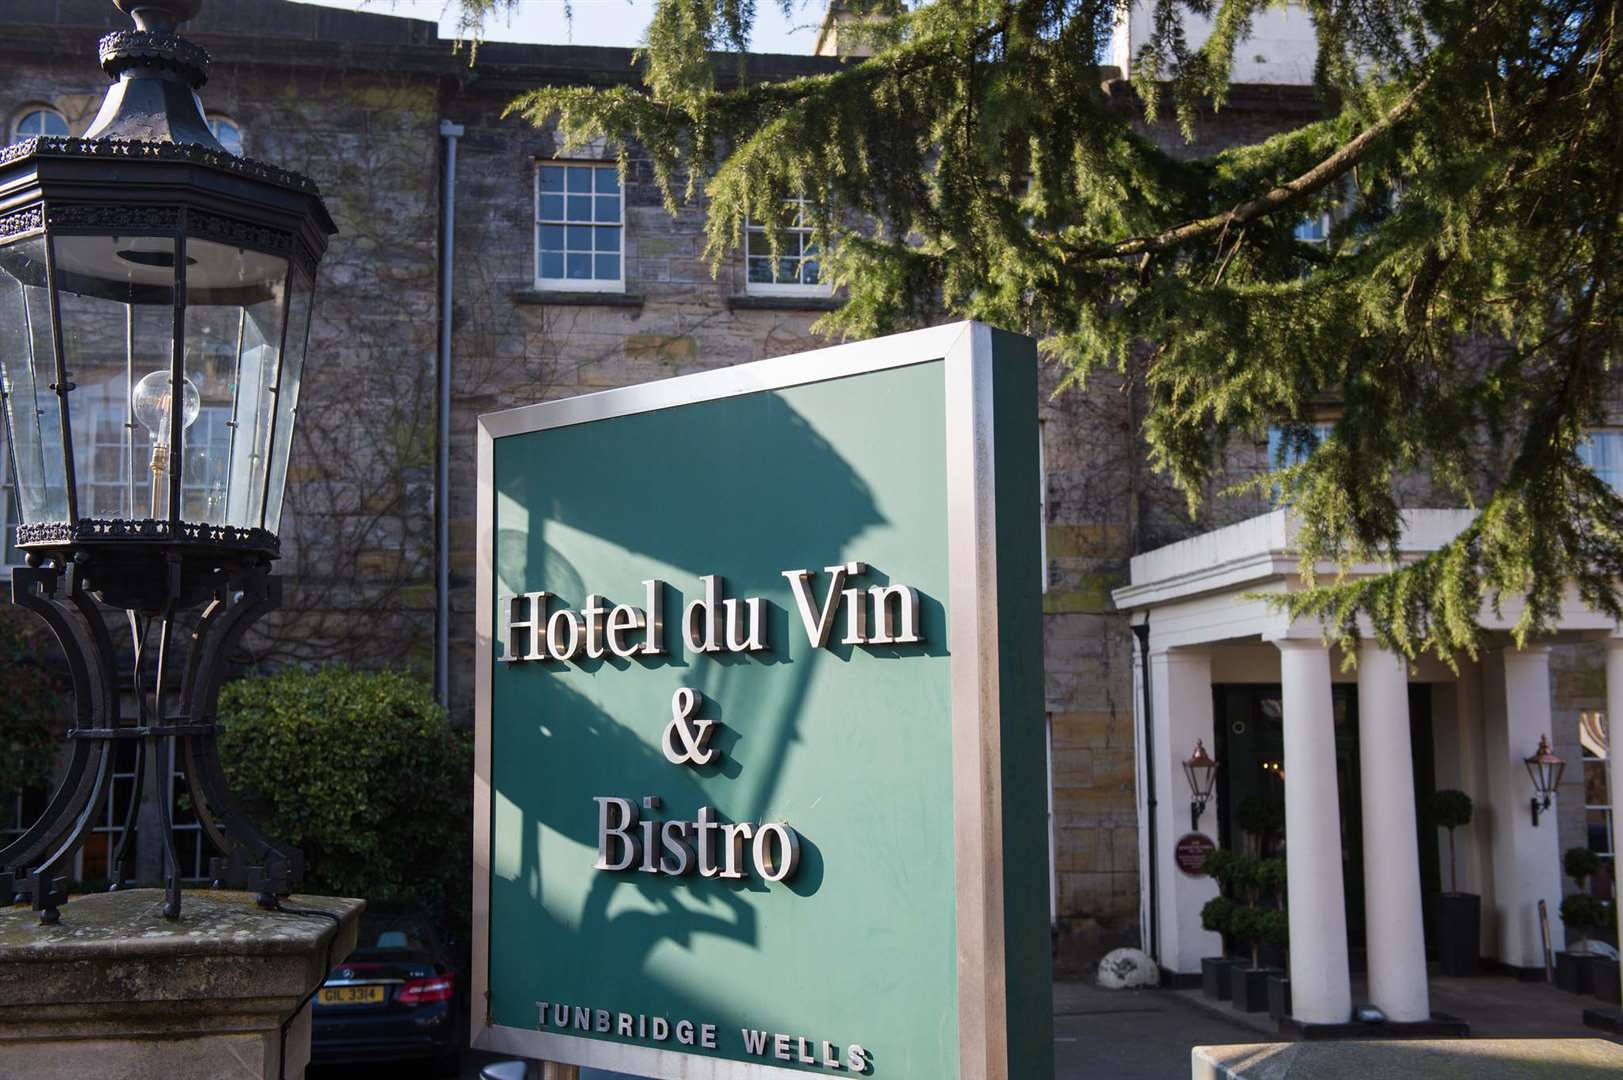 Hotel du Vin in Tunbridge Wells has scooped another award